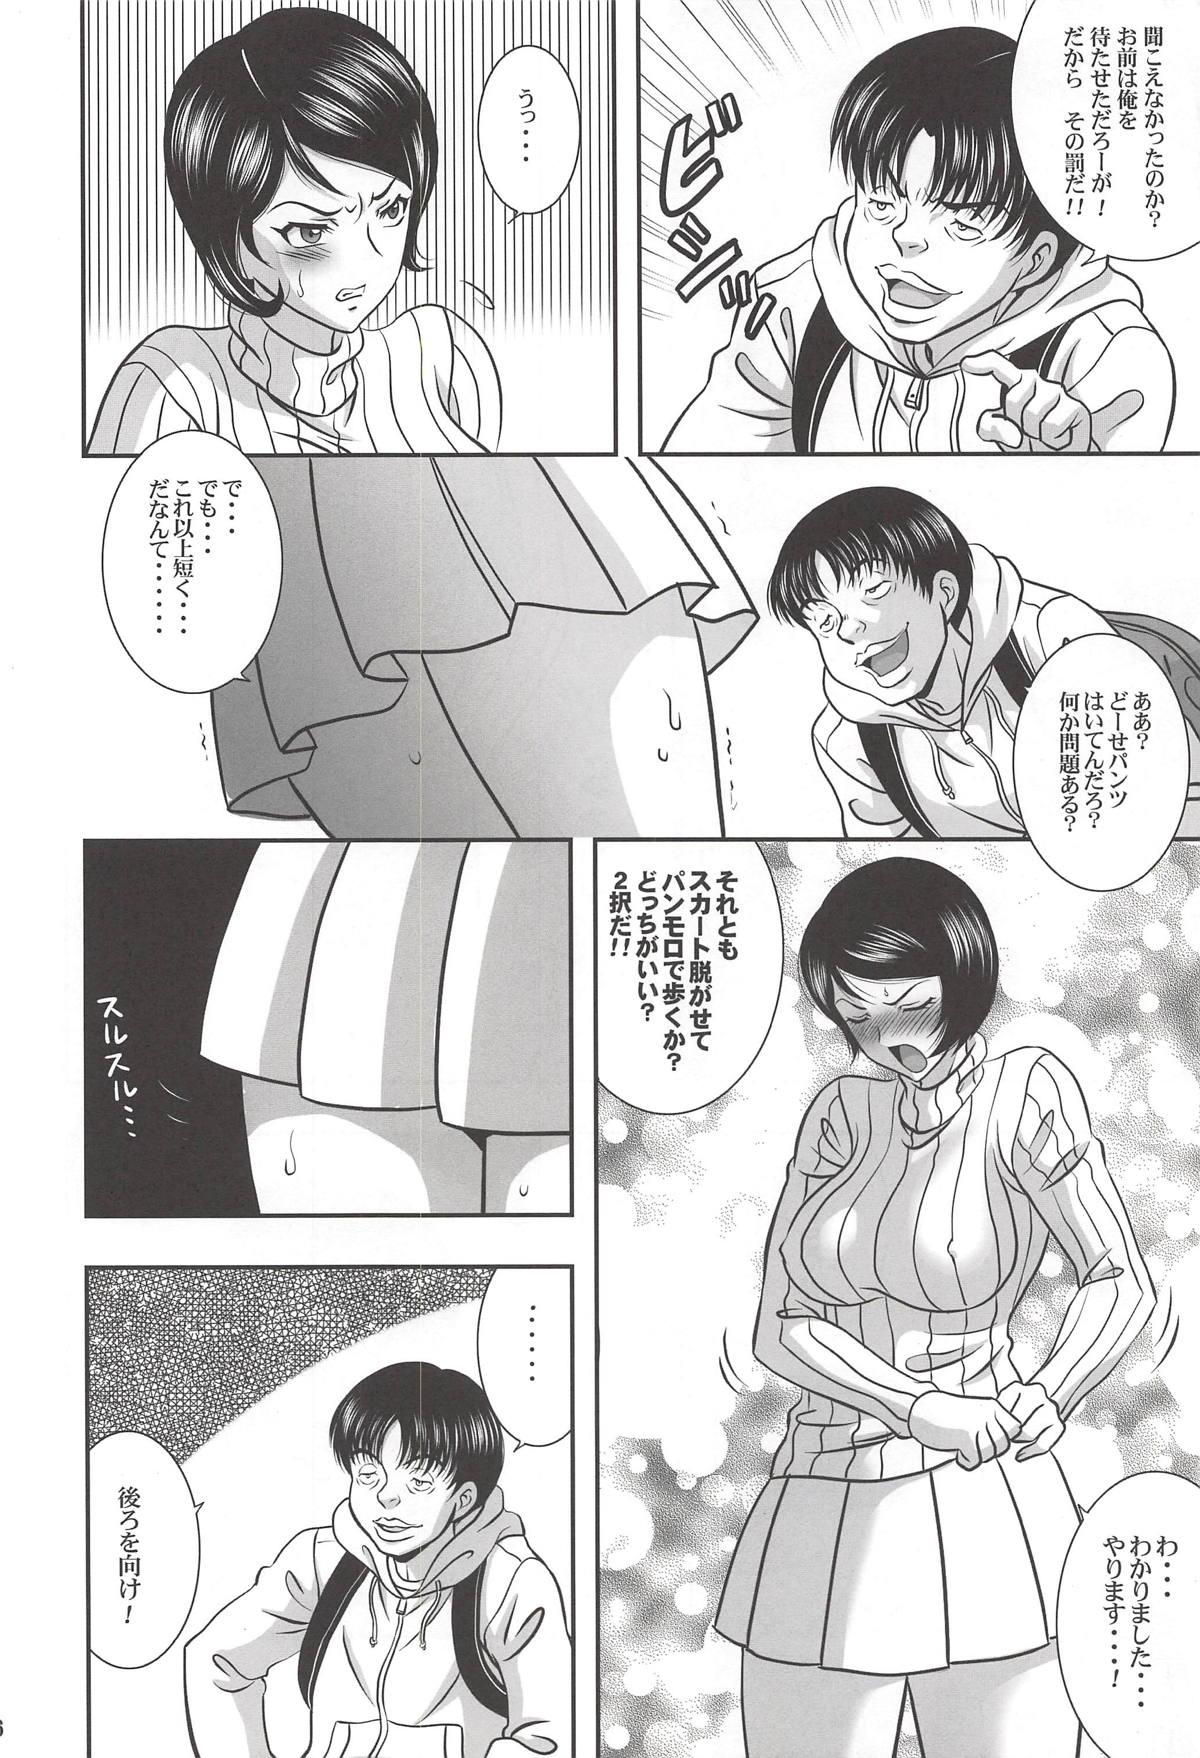 Rub ISHIZAWA 05 - Bakuman Cuckolding - Page 5